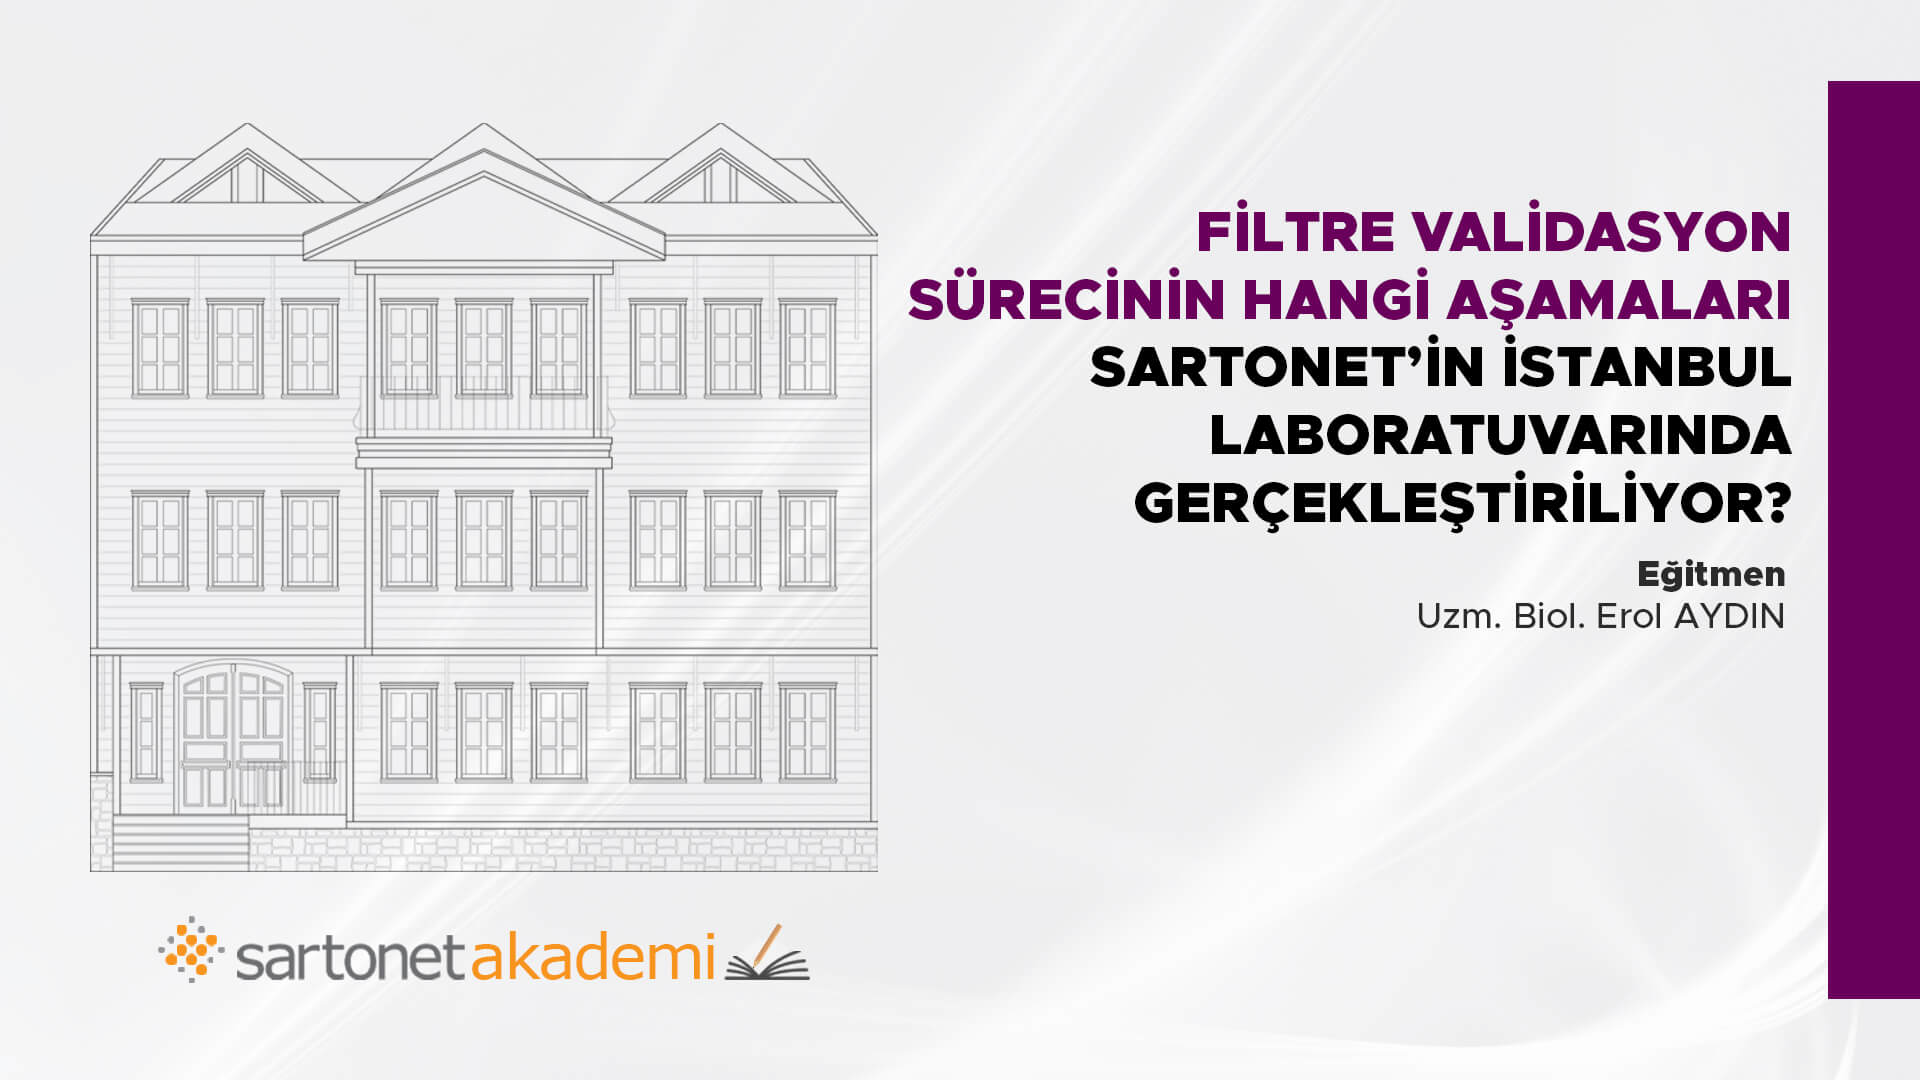 Filtre validasyon sürecinin hangi aşamaları  Sartonet’in İstanbul laboratuvarında gerçekleştiriliyor?